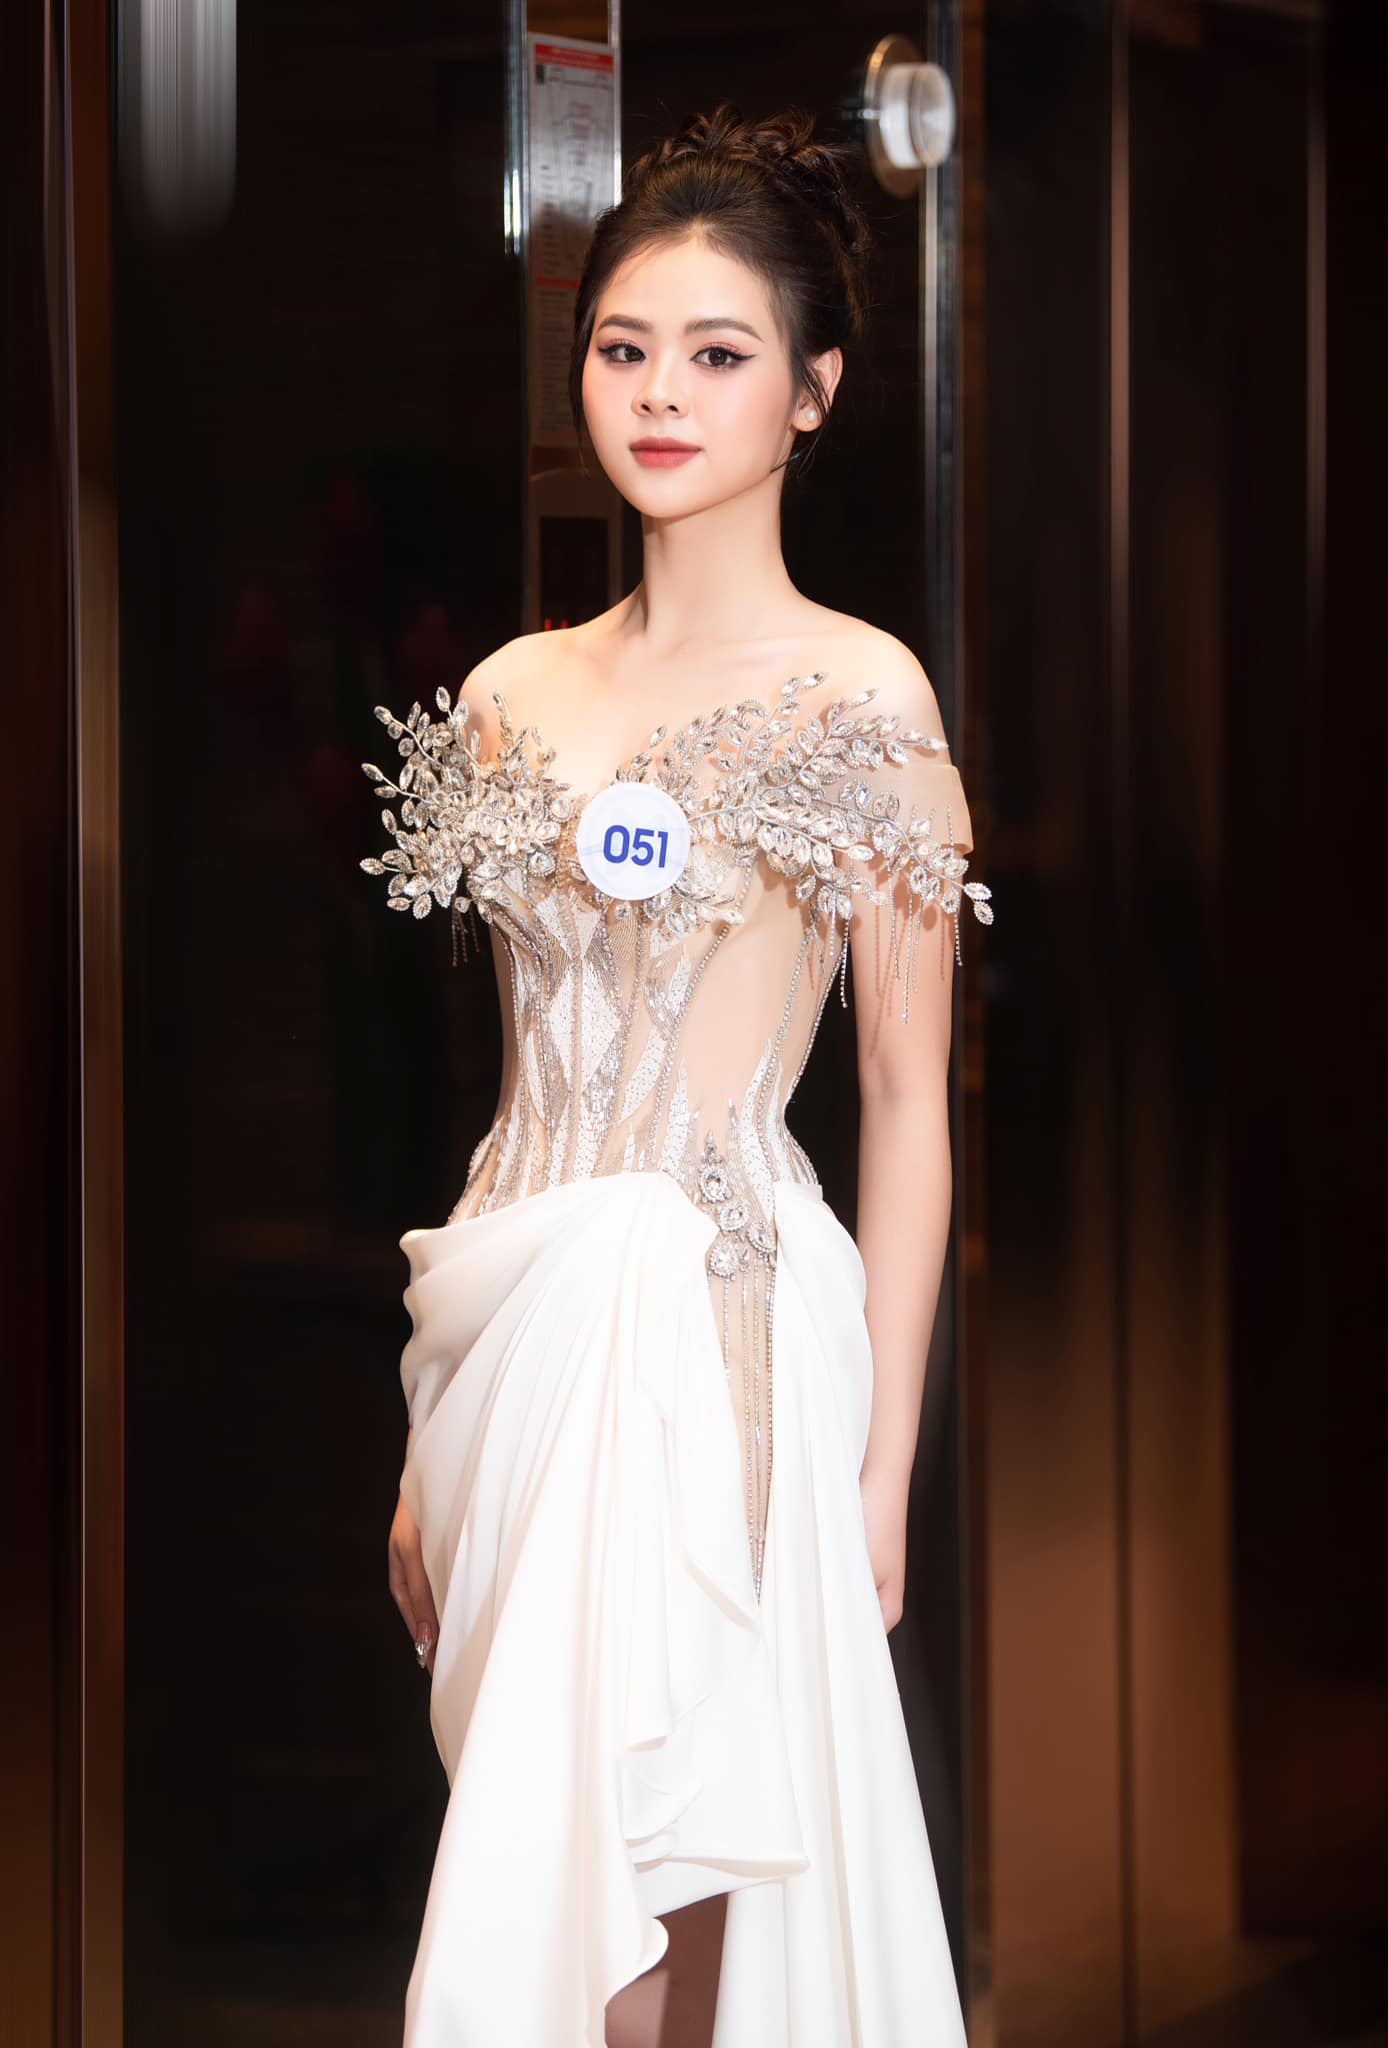 Nhan sắc xinh đẹp, lôi cuốn của thí sinh cao 1,7m vào thẳng Top 20 Miss World Vietnam 2023 - Ảnh 4.